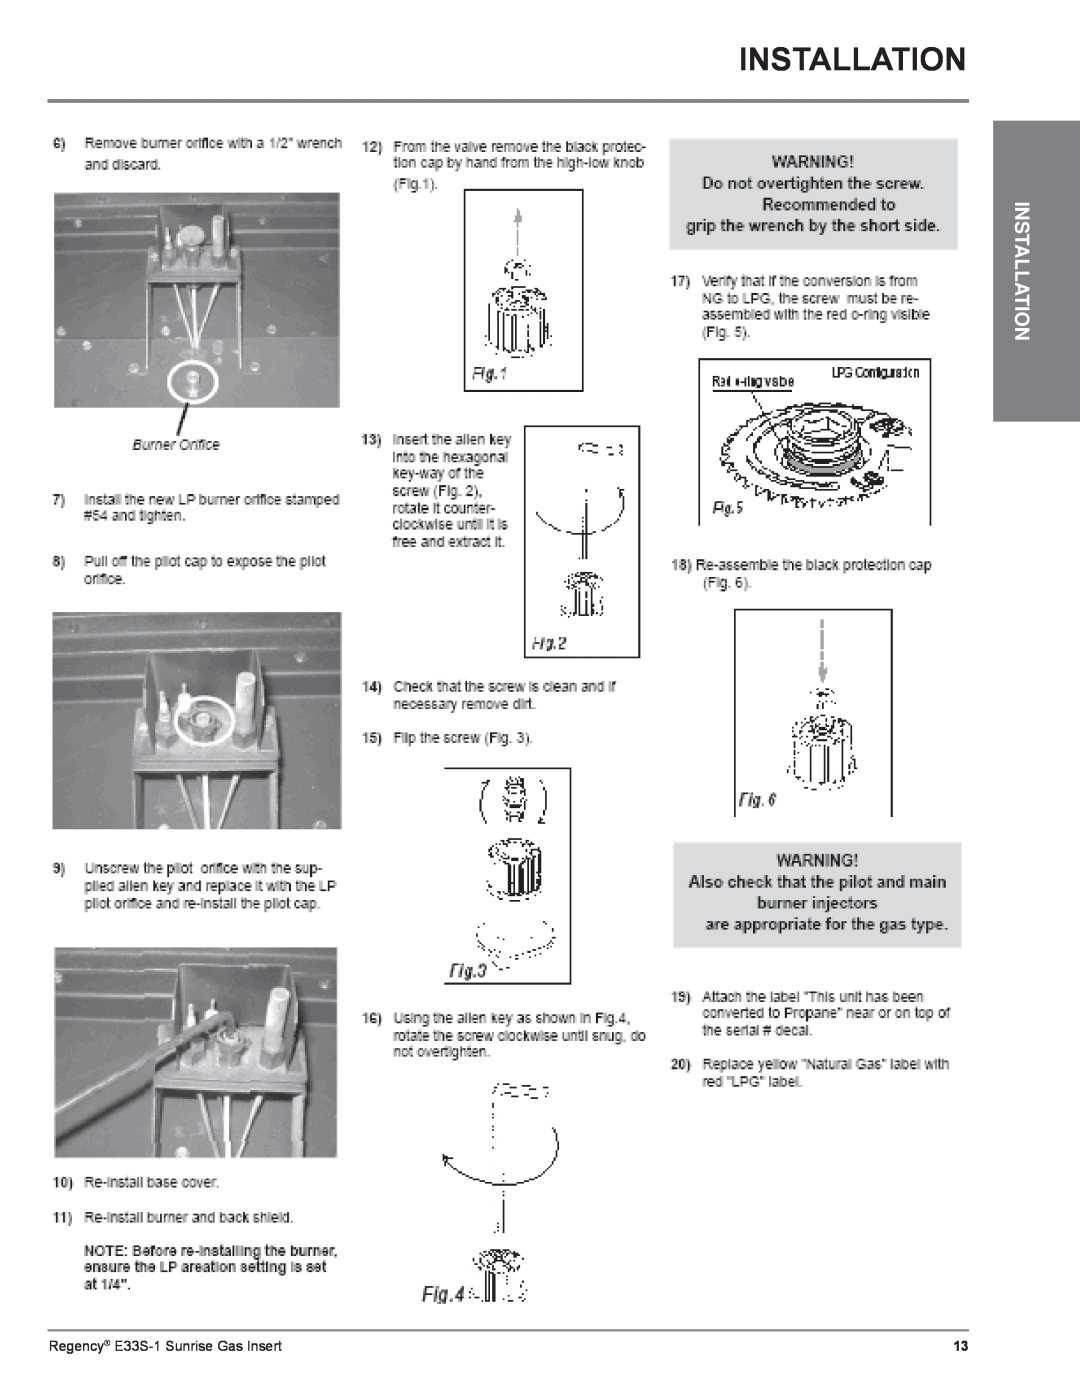 Regency E33S installation manual Installation 